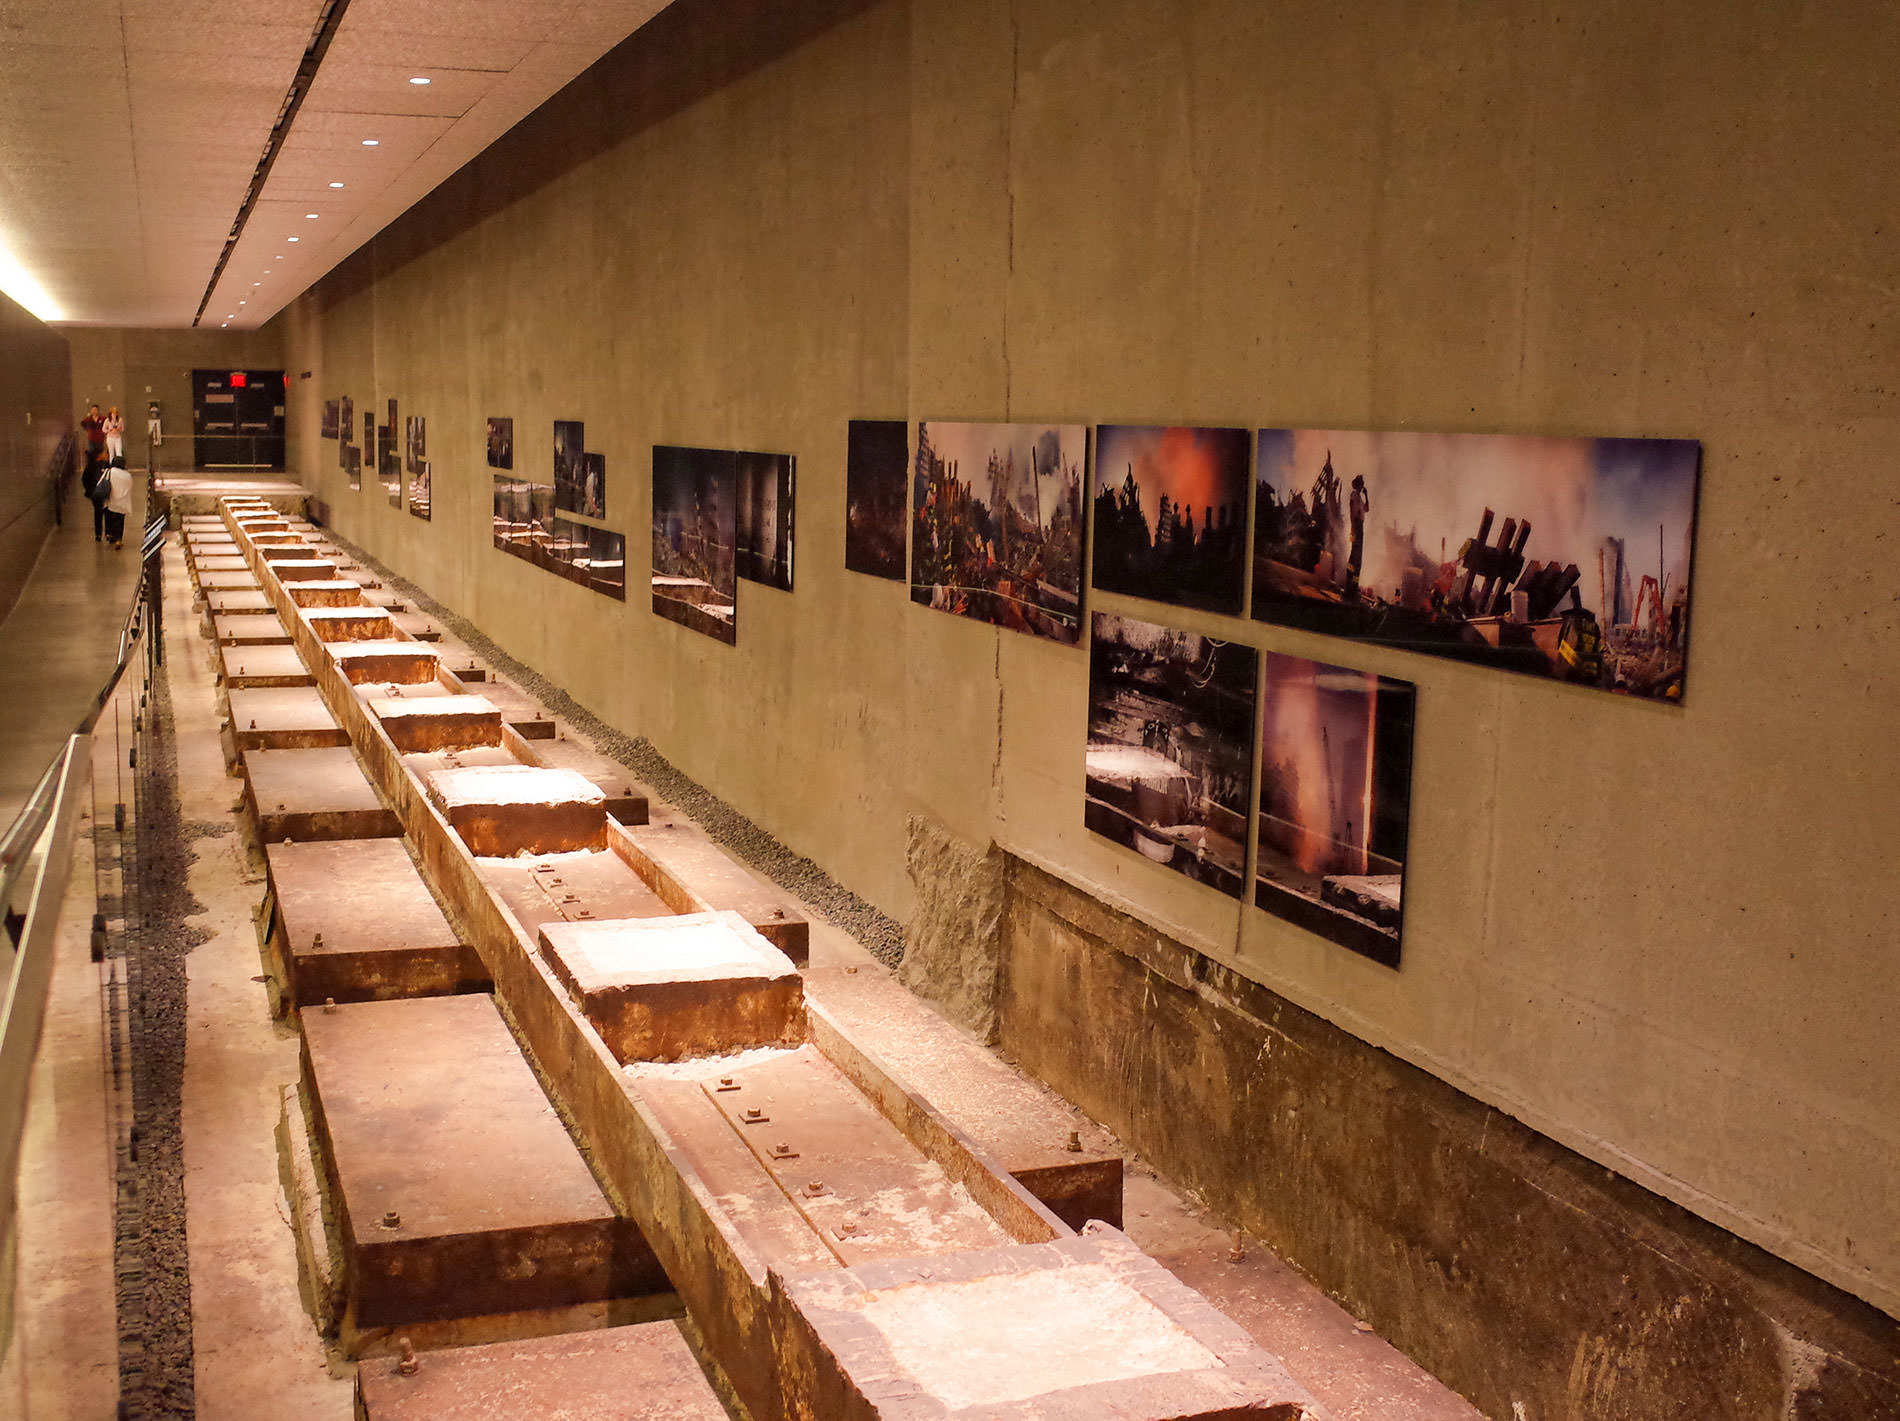 ナショナル セプテンバー 11 メモリアル & ミュージアム | グランド ゼロ / National September 11 Memorial & Museum | Ground Zero / ニューヨーク・ボストン旅行 2019